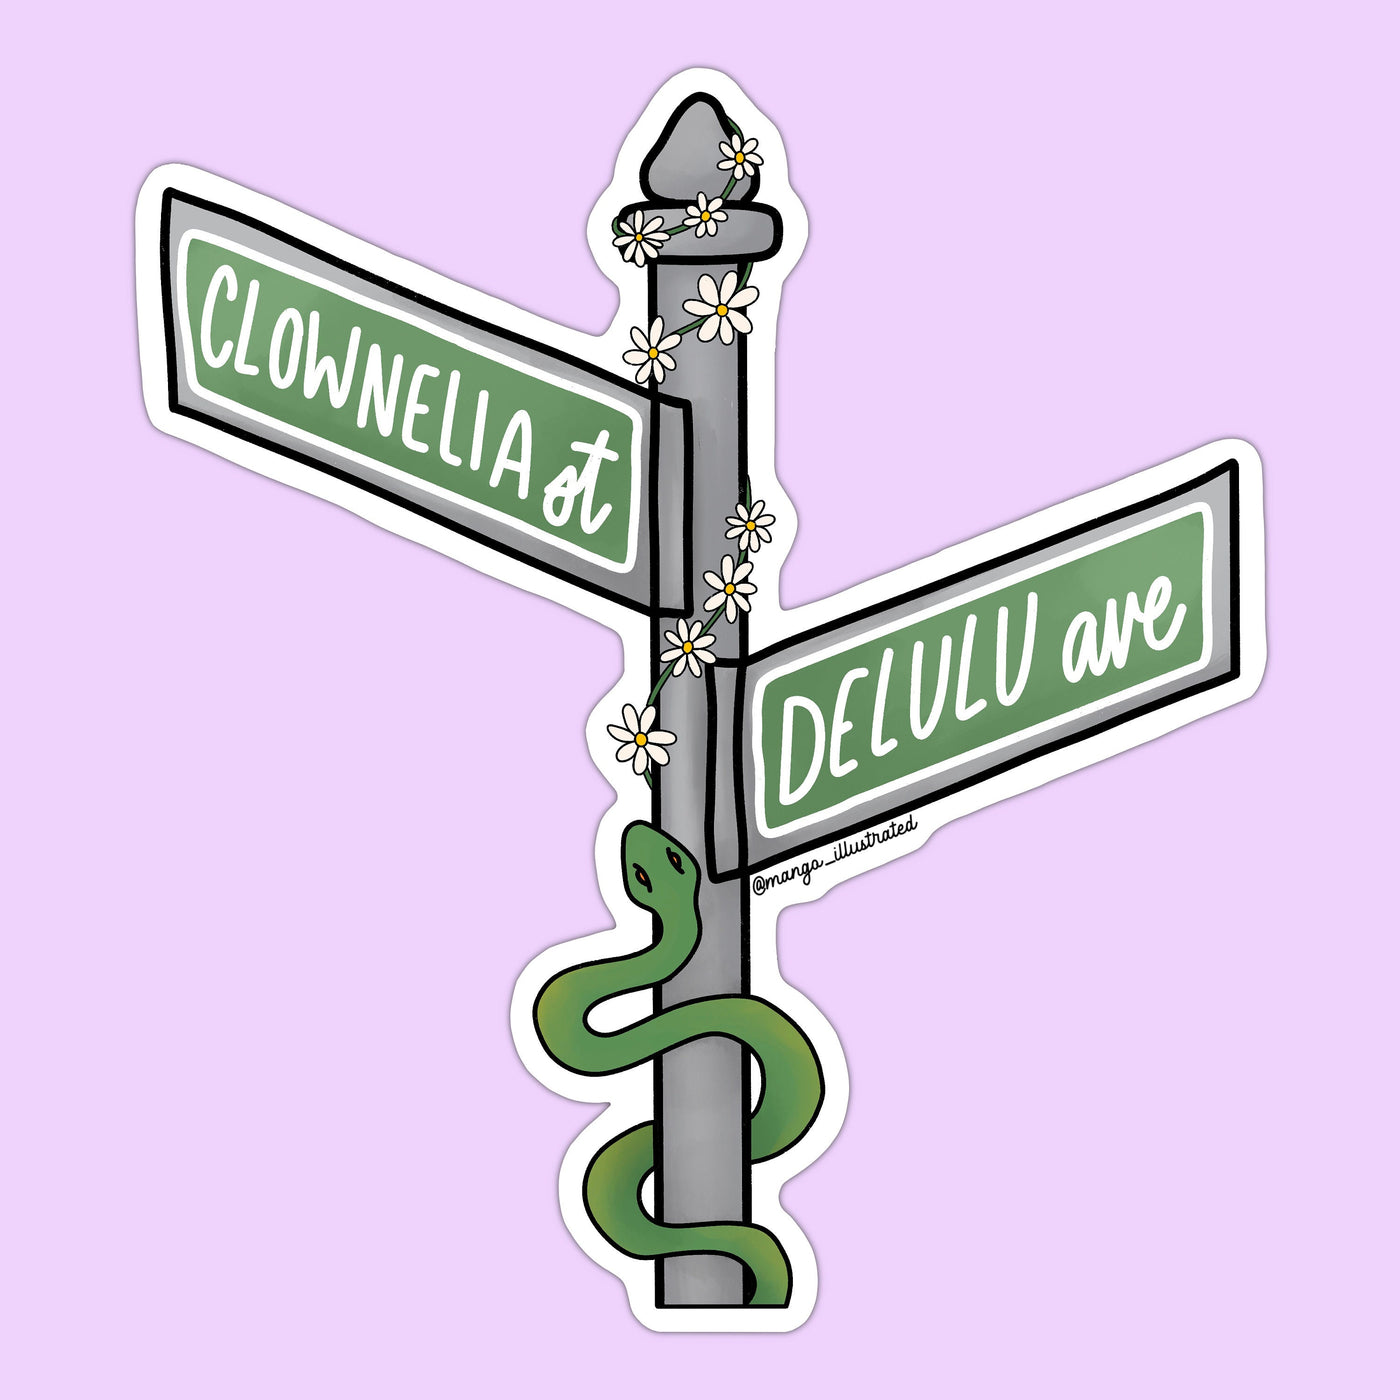 Clownelia Street and Delulu Avenue sticker, swiftie clowning sticker, eras tour sticker, swiftie sticker, gift for swiftie, rep era sticker